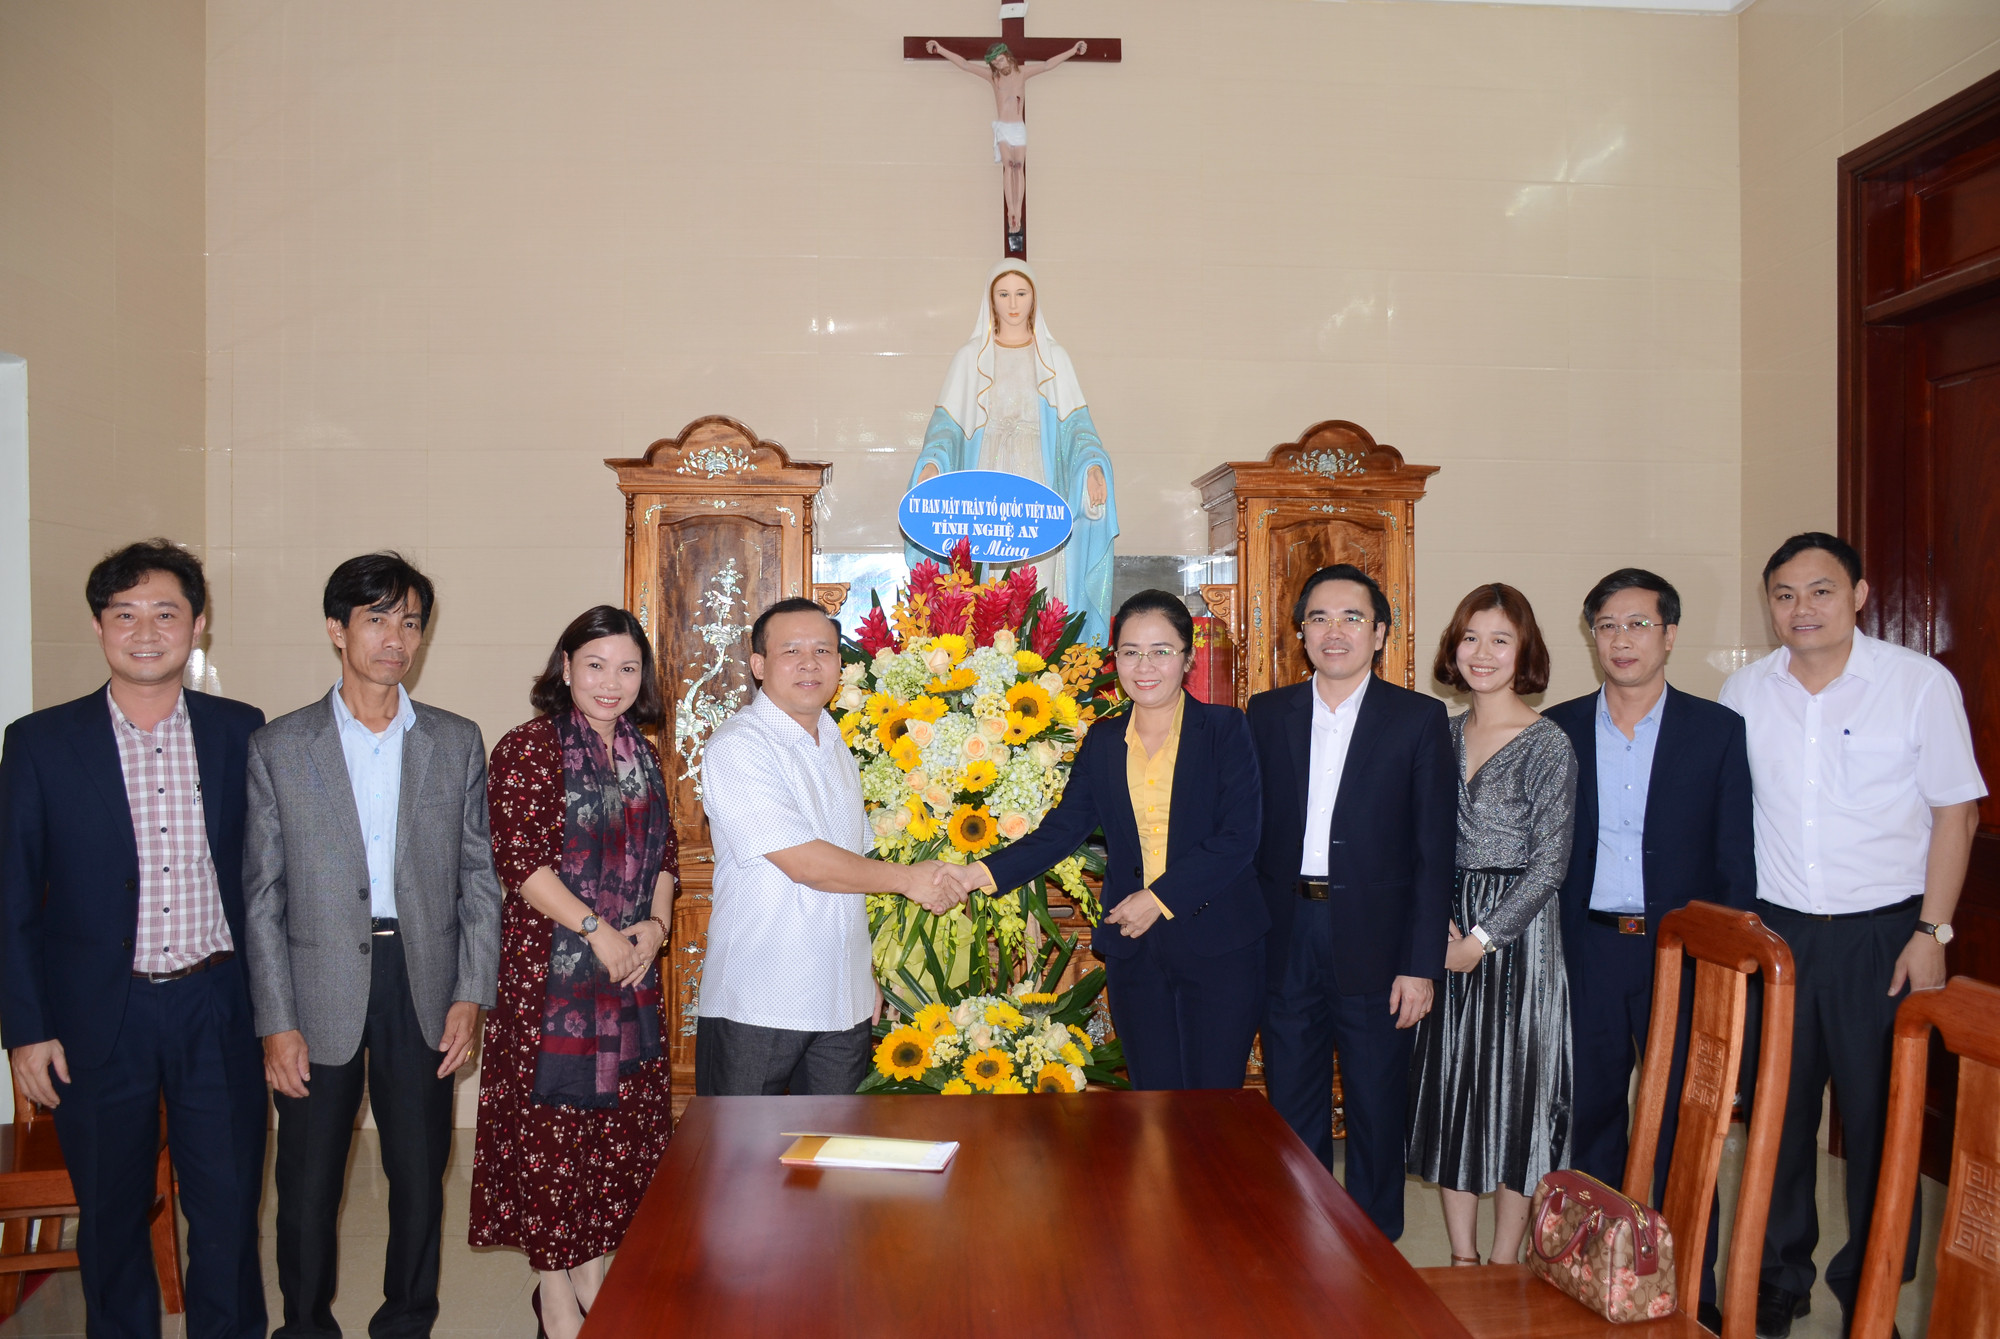 Đồng chí Võ Thị Minh Sinh tặng hoa chúc mừng Giáng sinh tới Linh mục Phan Văn Thắng. Ảnh: Thành Chung